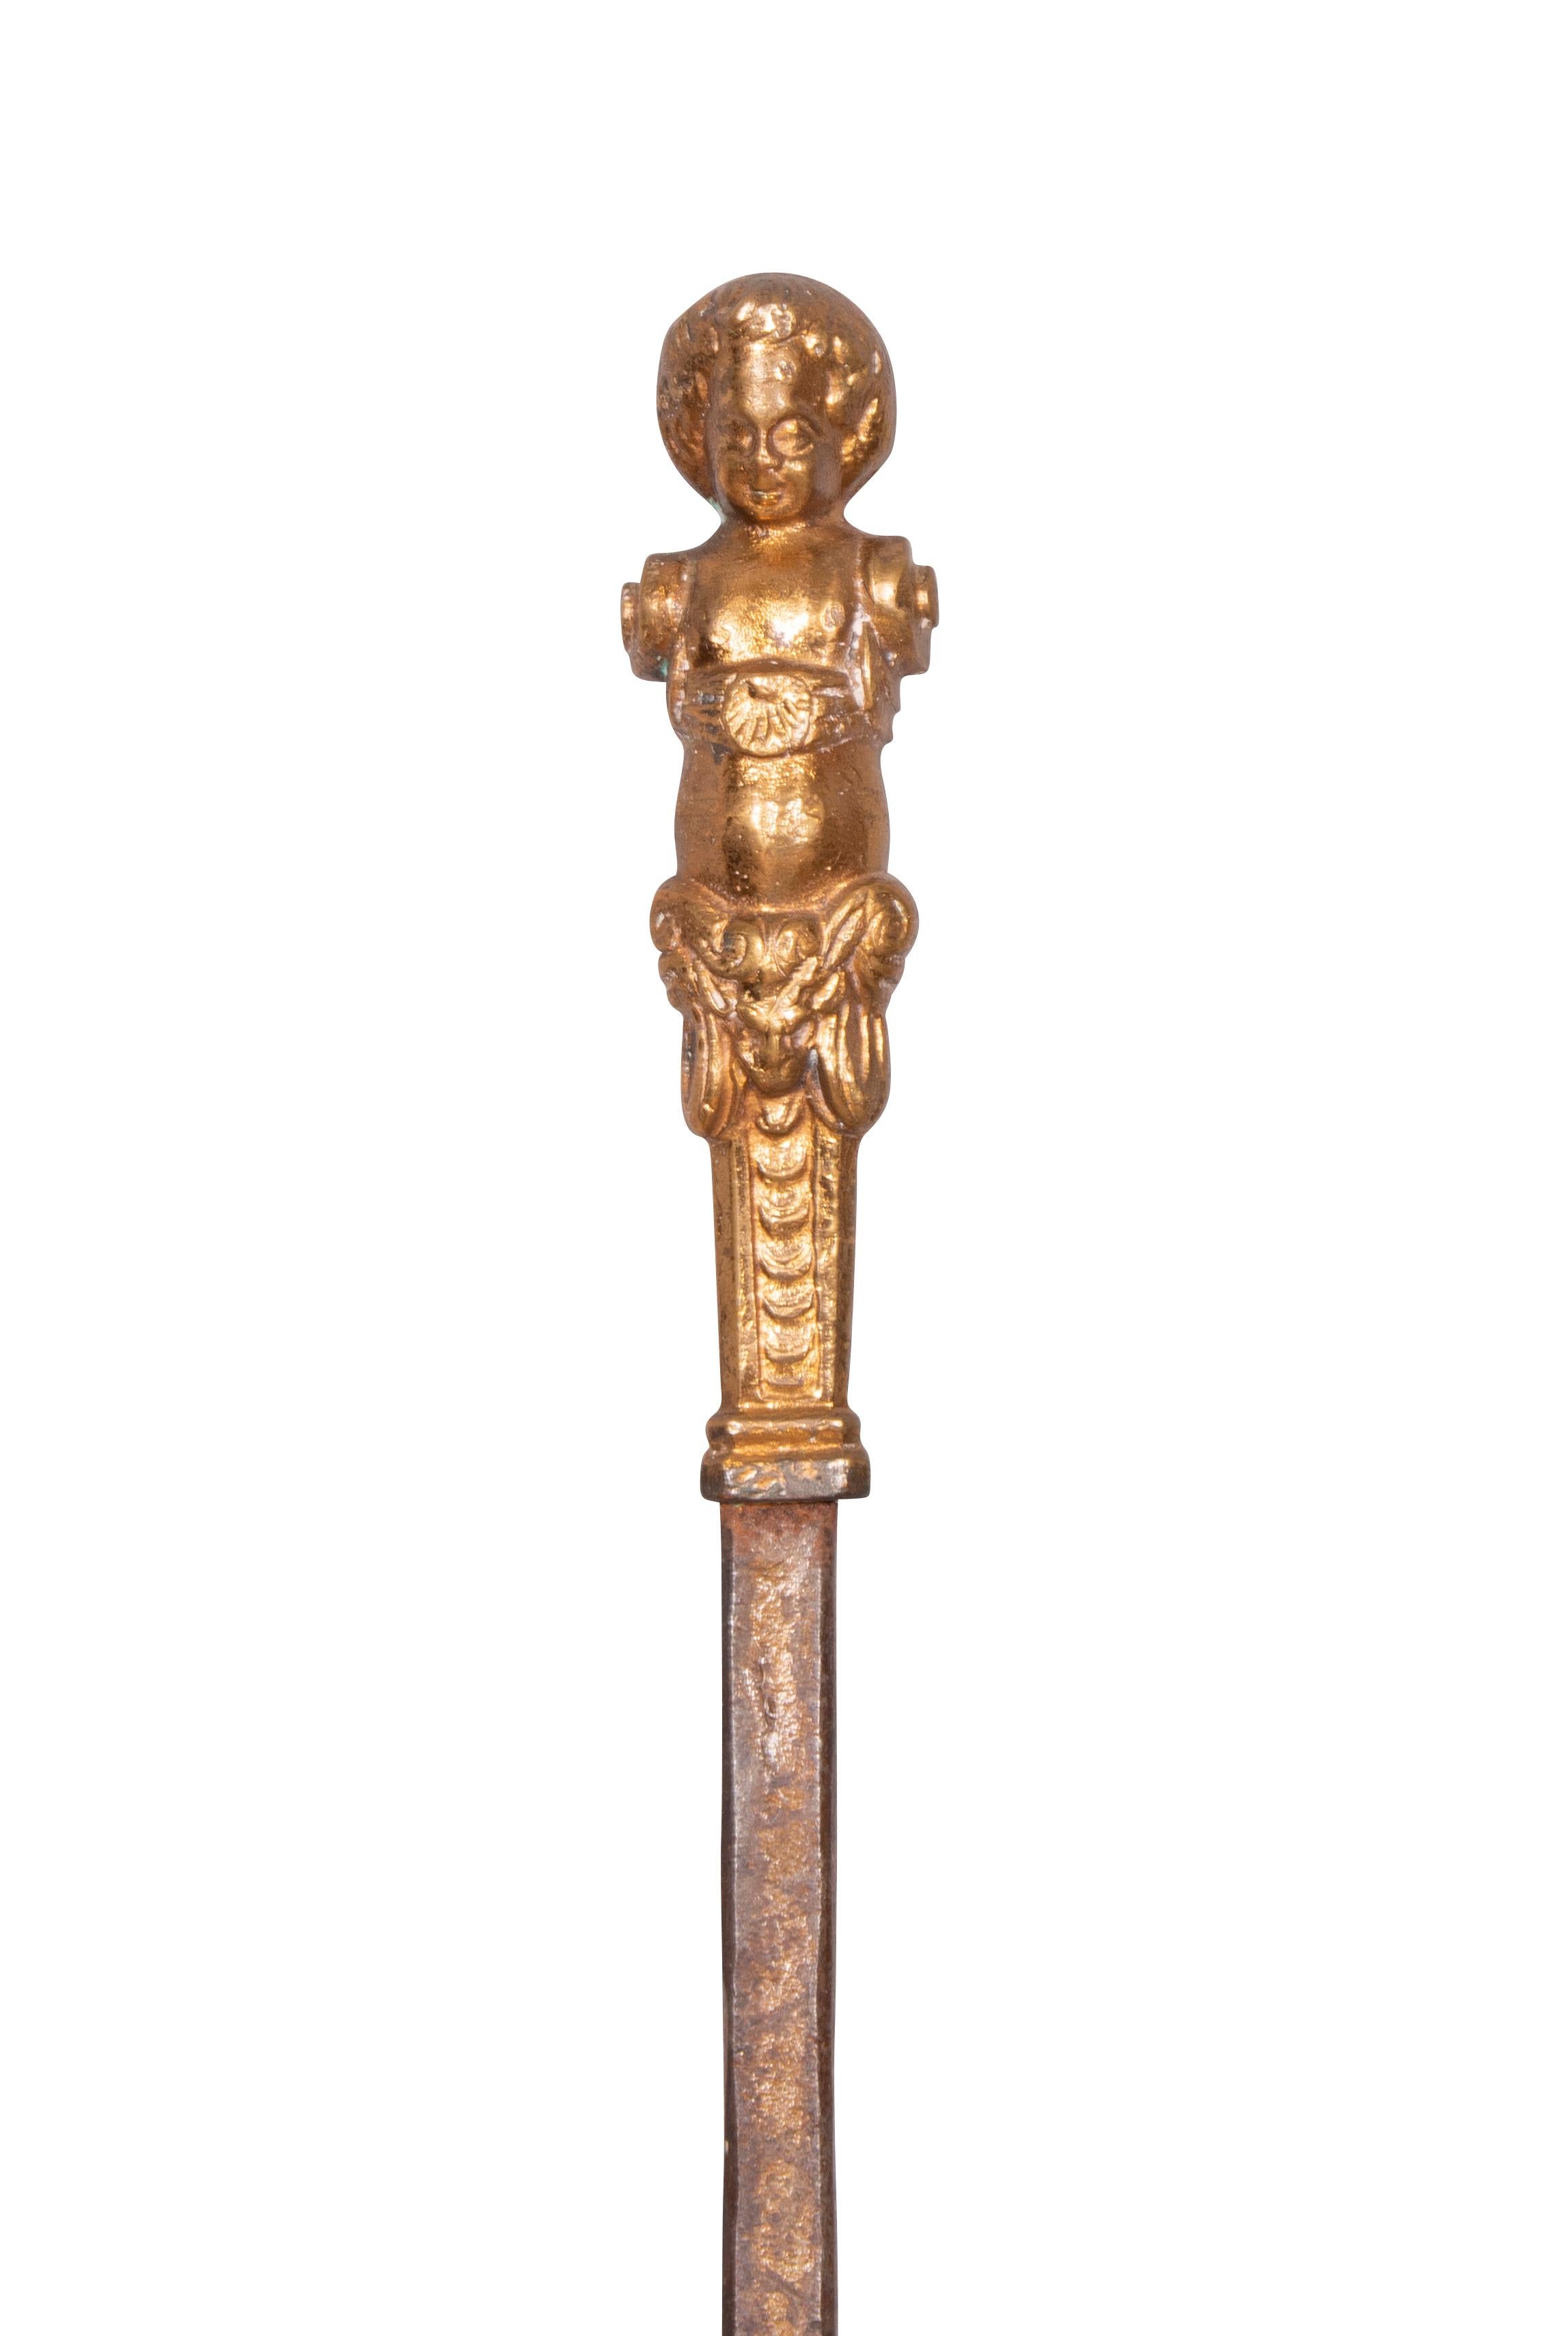 Trois pièces avec des manches figuratifs comprenant une pelle, une fourchette et un tisonnier.